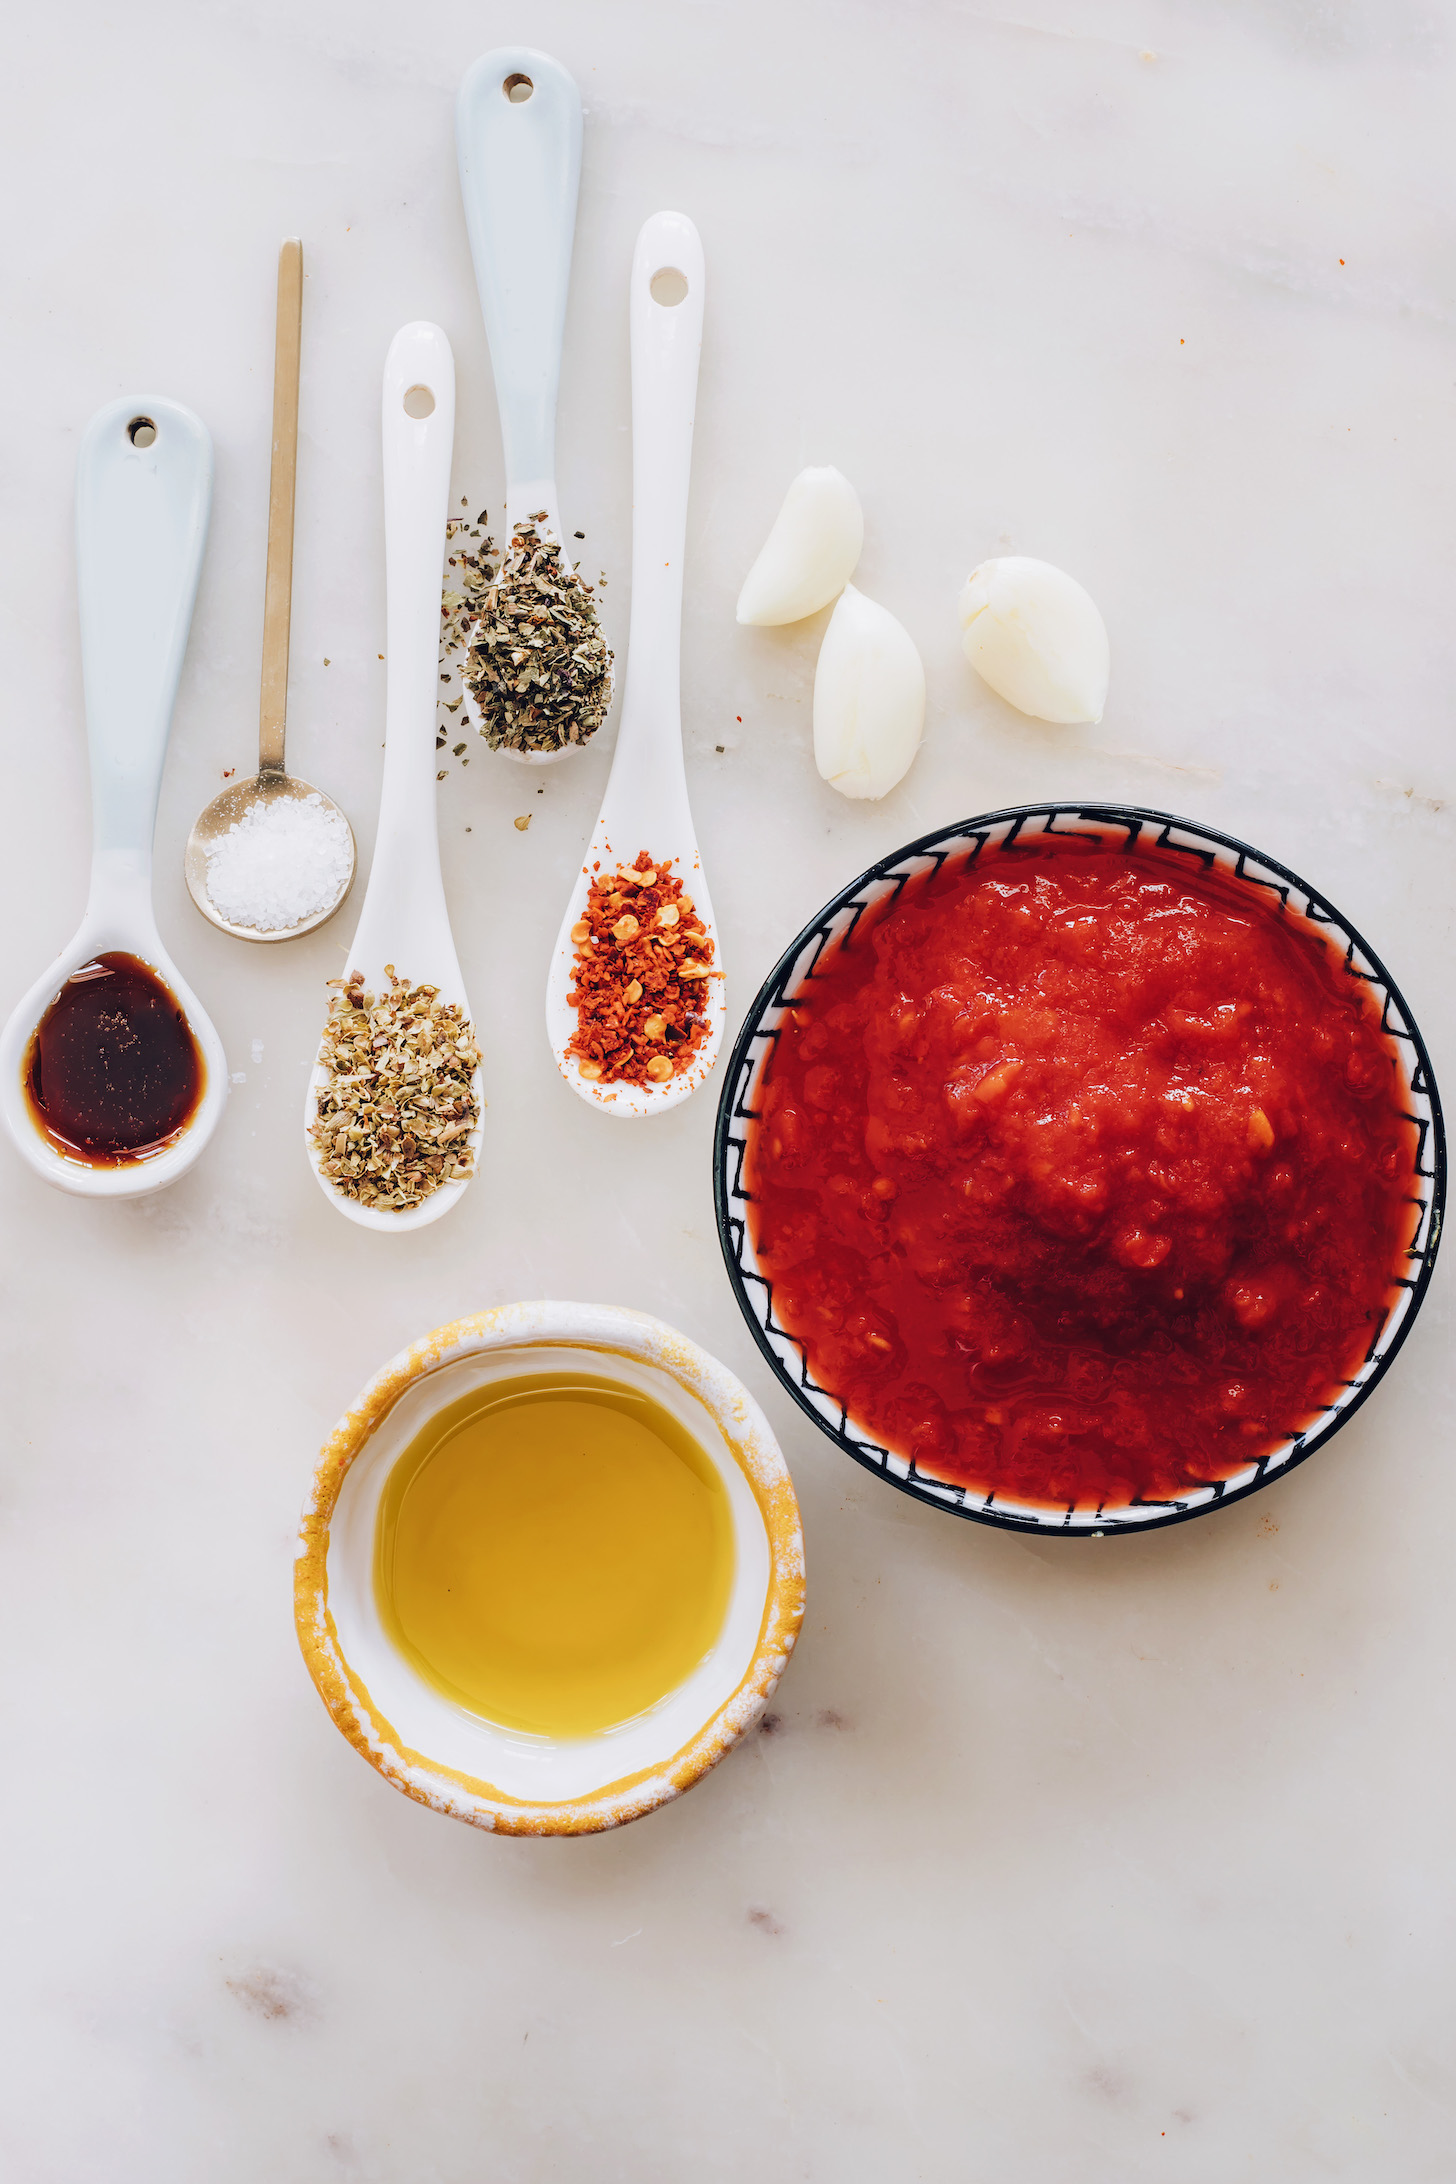 Karanfil sarımsak, kaşık dolusu ot, kırmızı pul biber, tuz ve akçaağaç şurubu ve kaseler zeytinyağı ve ezilmiş domates